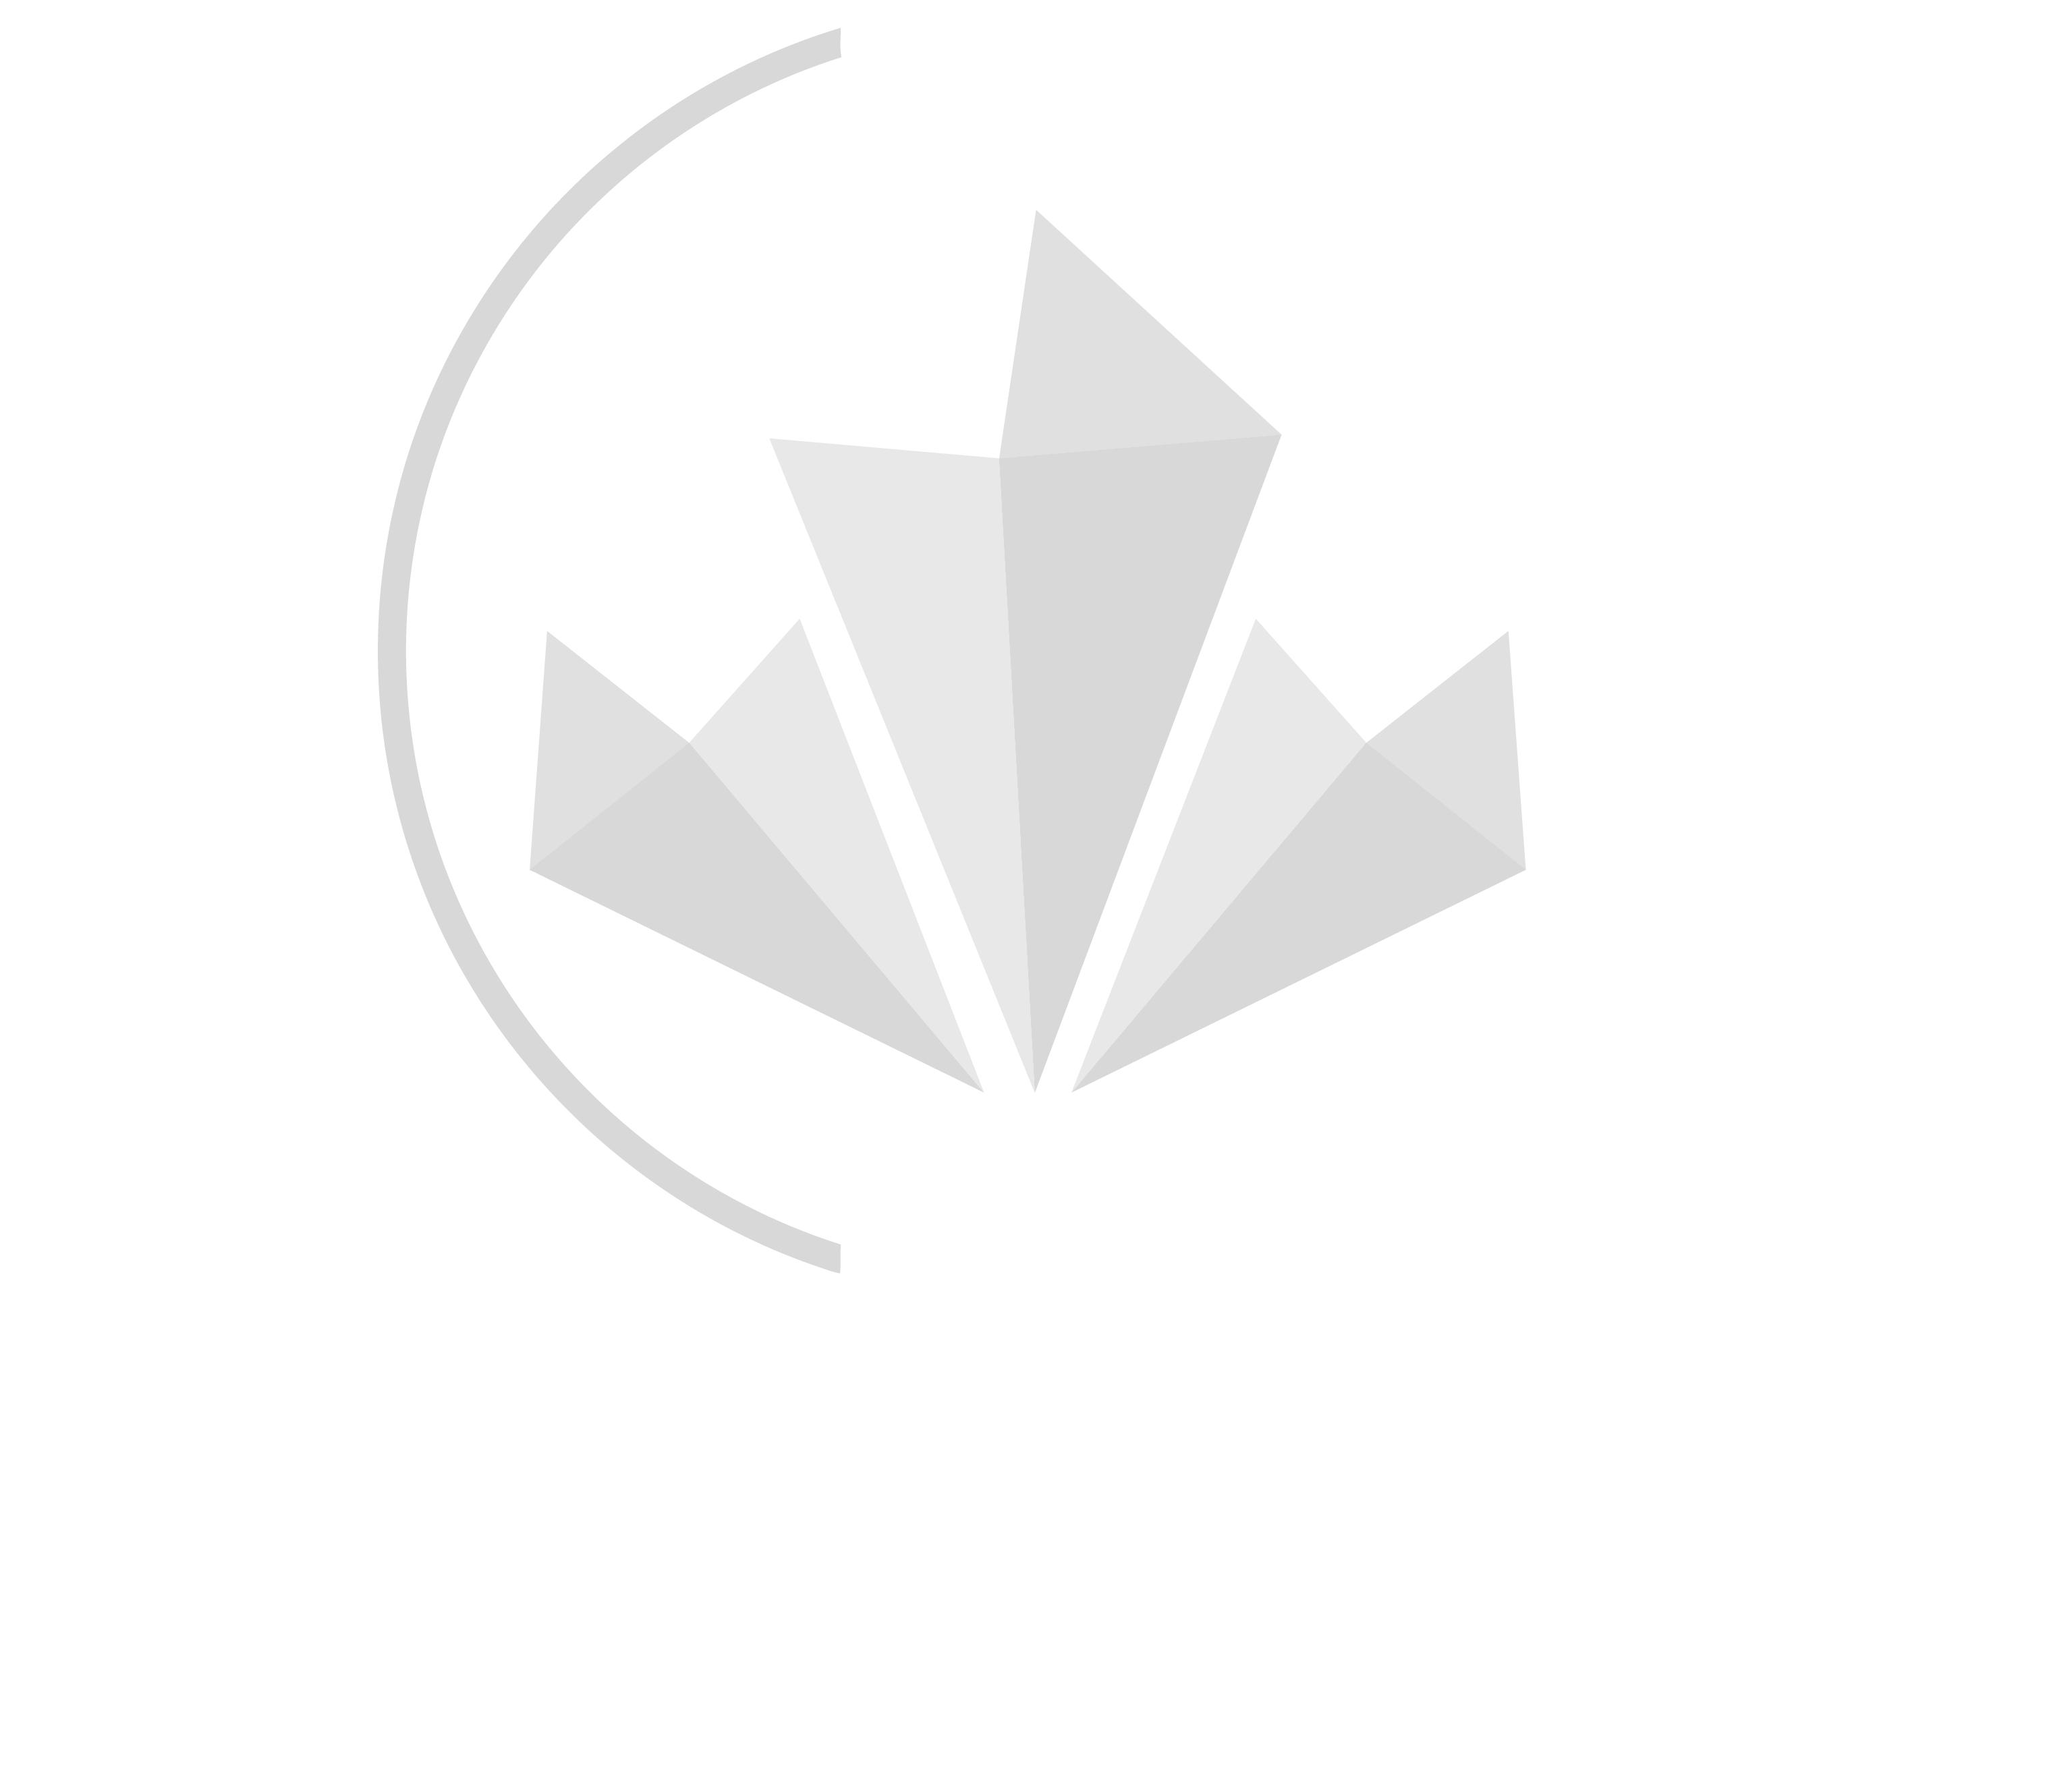 El Apache